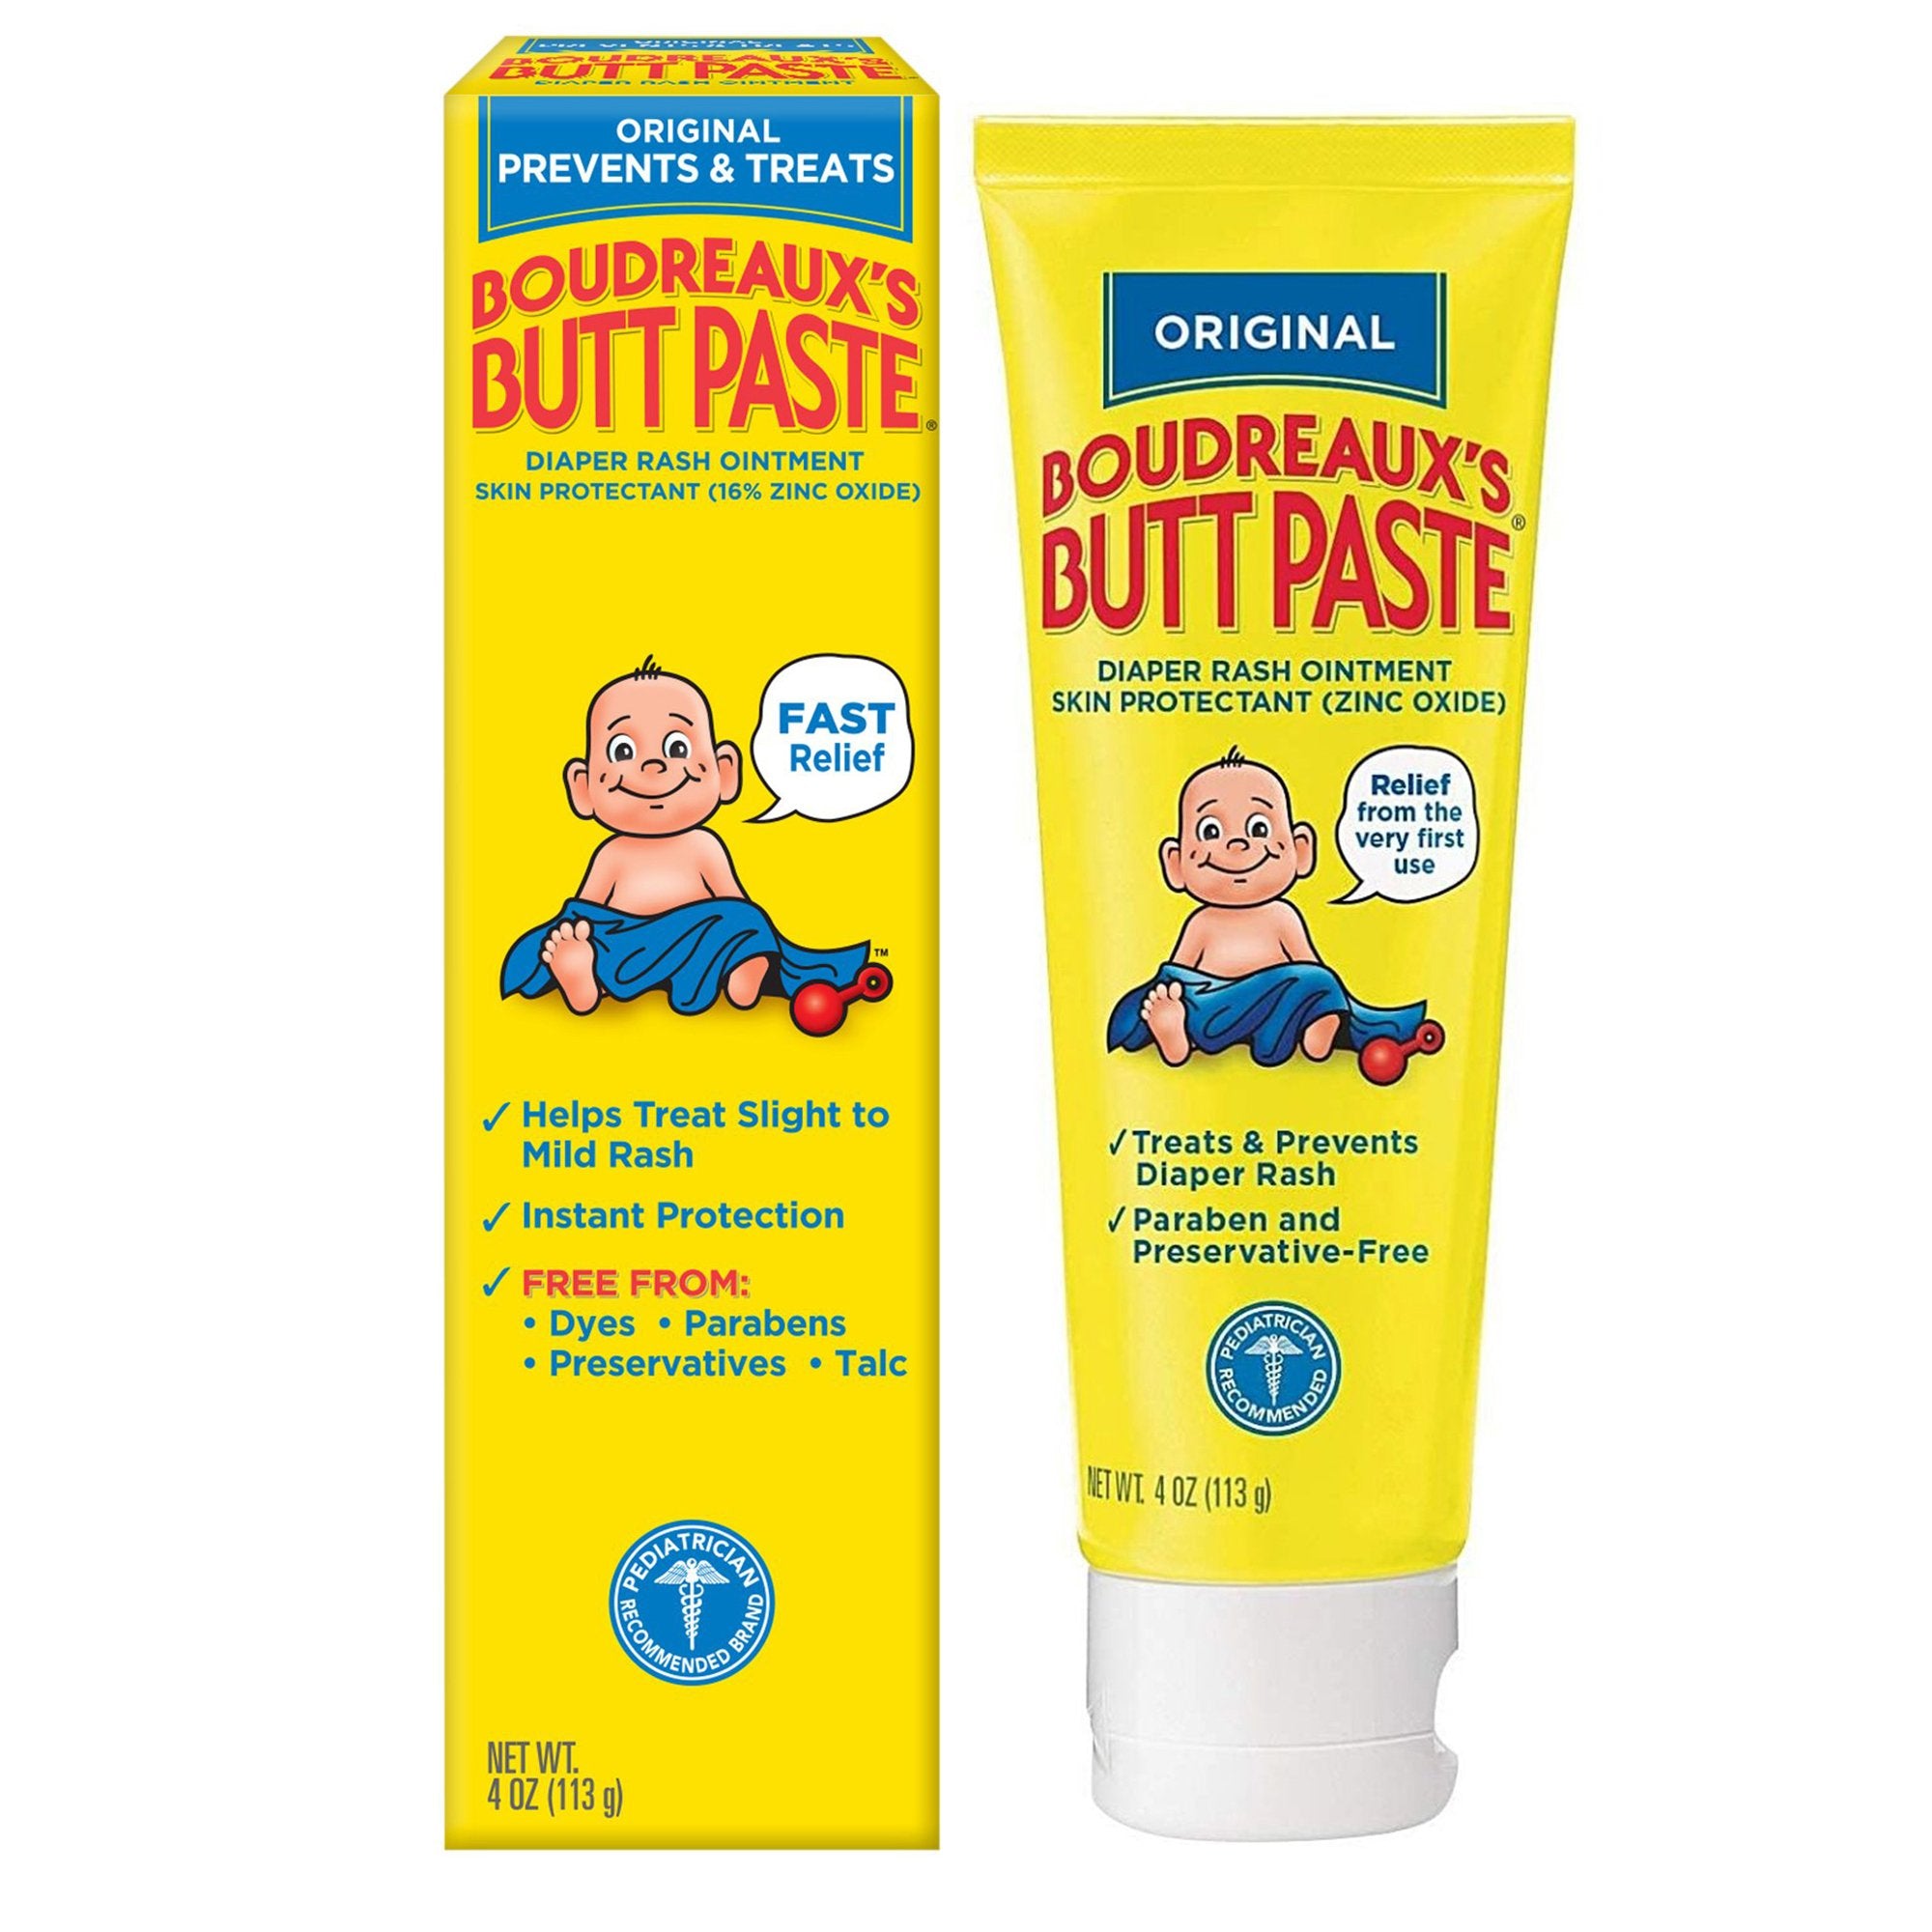 Boudreaux's Original Butt Paste Diaper Rash Treatment, 16% Zinc Oxide, 4 oz Tube